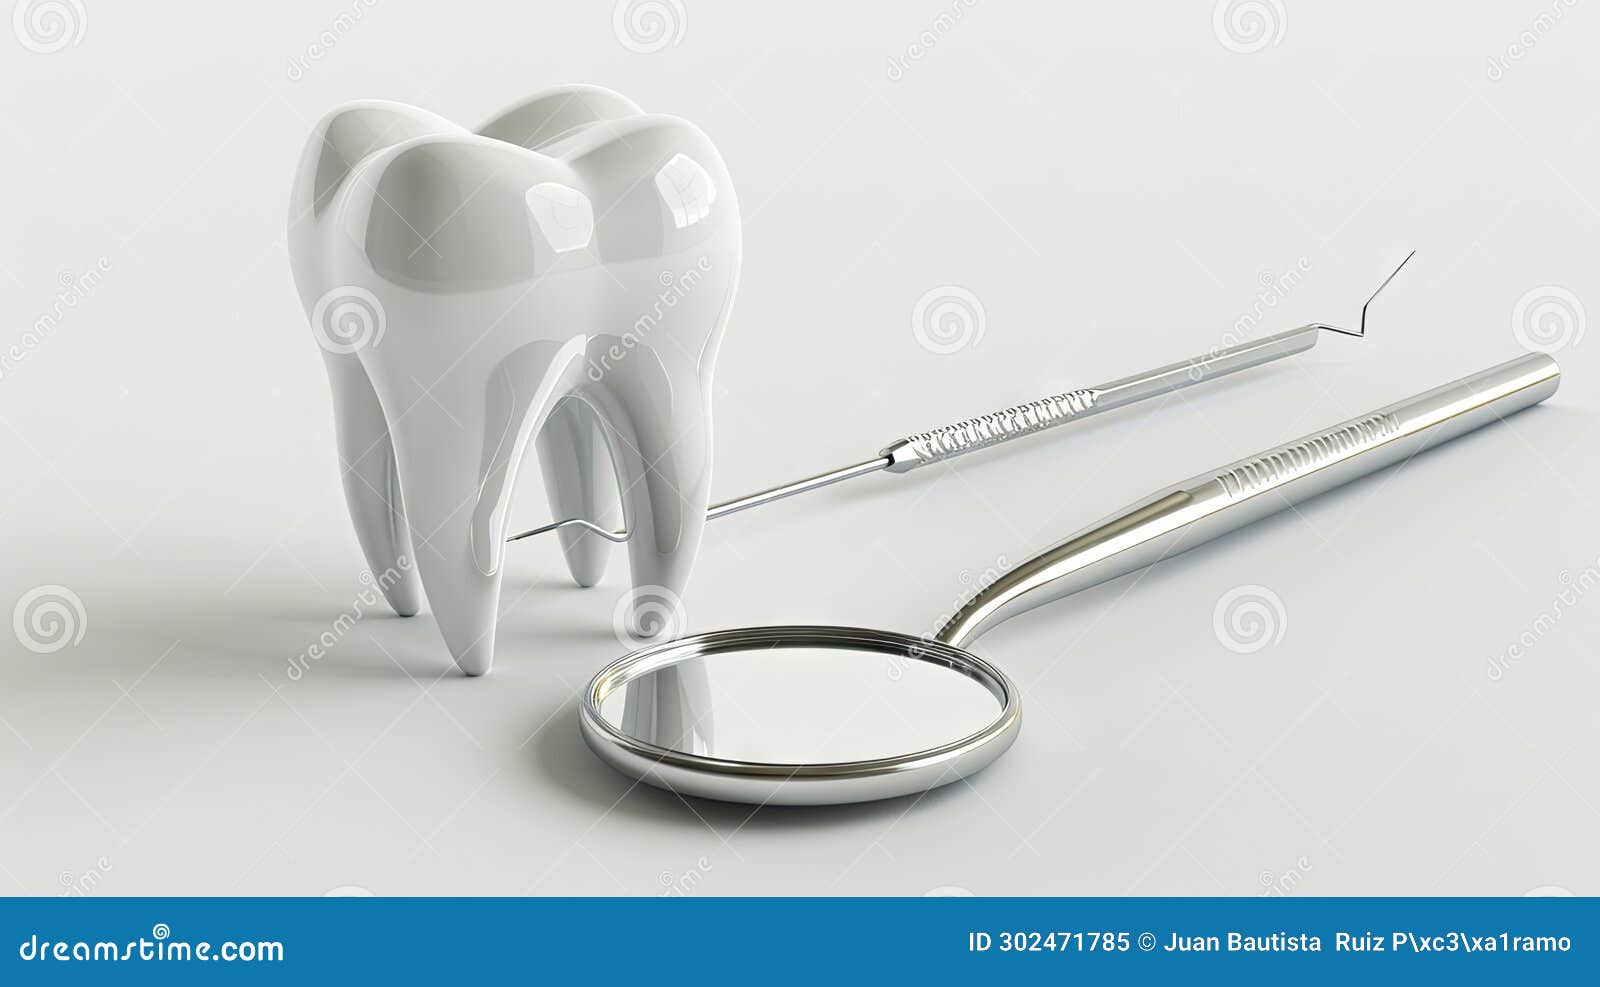 Eleganckie i nowoczesne narzędzia stomatologiczne : wysokiej jakości renderowany obraz modelu zęba z lustrami dentystycznymi i son. Eleganckie i nowoczesne narzędzia stomatologiczne : wysokiej jakości renderowany obraz modelu zęba z lustrami dentystycznymi i wygenerowanymi próbkami